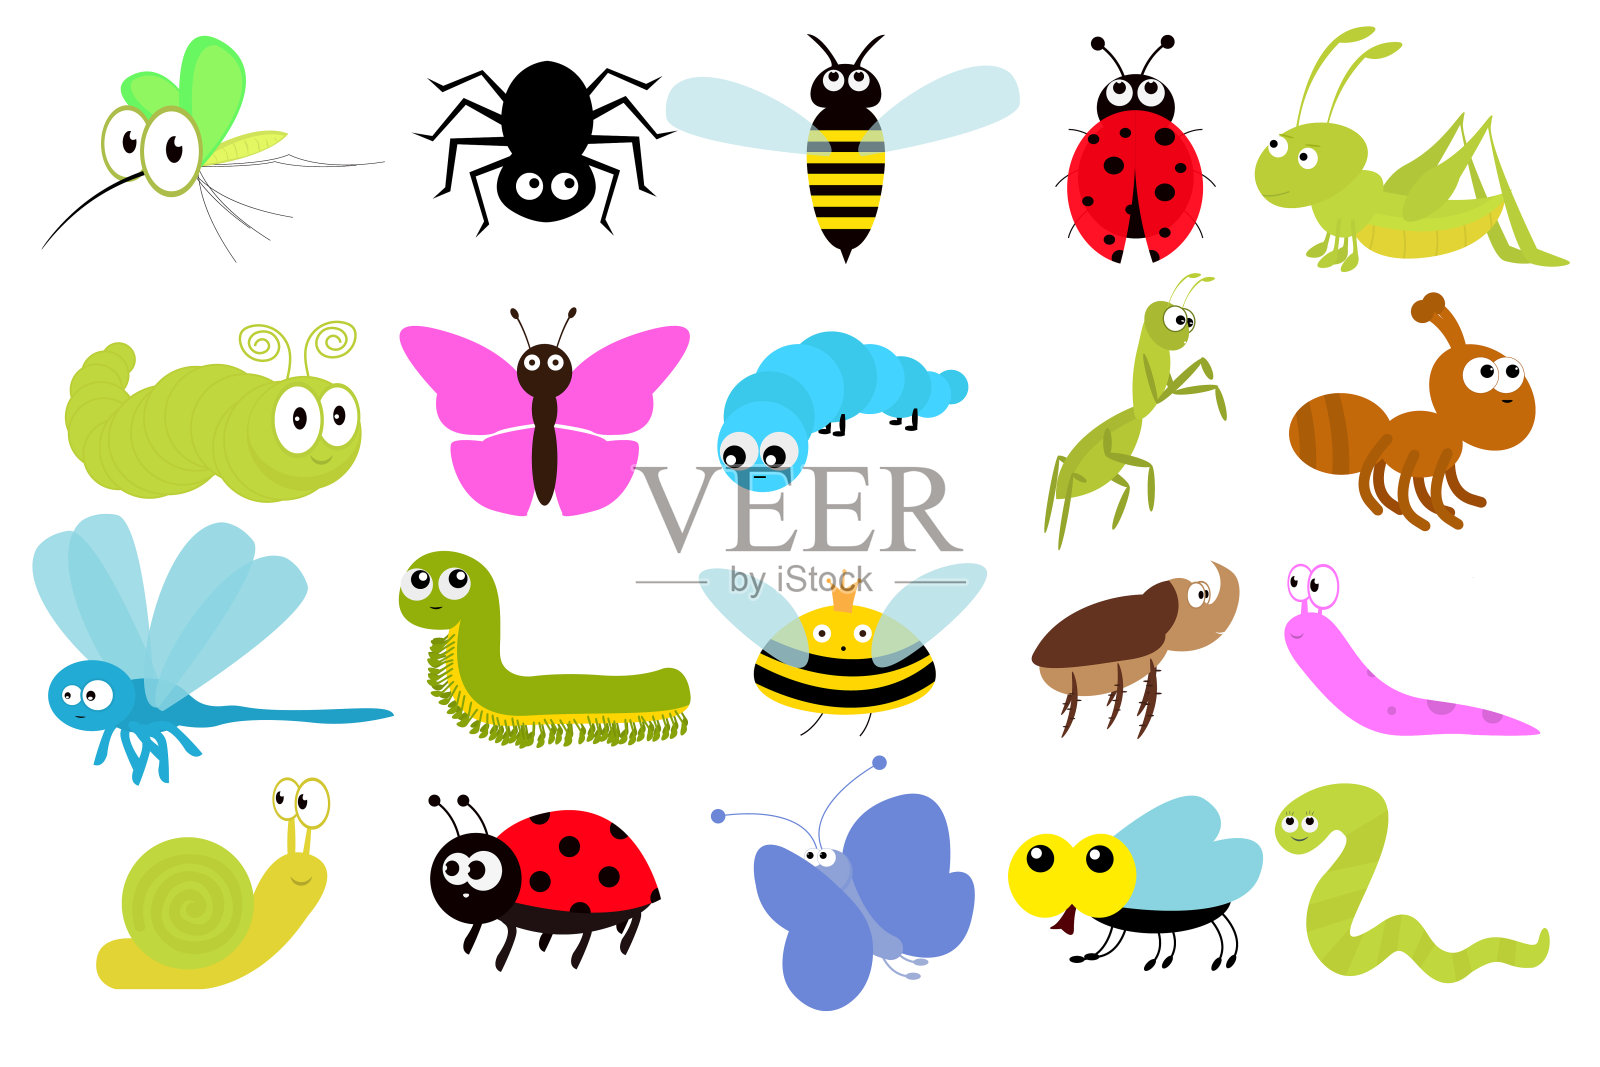 昆虫的图标集。卡哇伊瓢虫，蚊子，蝴蝶，犀牛甲虫，蜈蚣，蚱蜢，毛毛虫，蜘蛛，苍蝇，蜗牛，蜻蜓，蚂蚁，蠕虫，蛞蝓，蝗虫黄蜂，蜜蜂。平面设计。向量插画图片素材